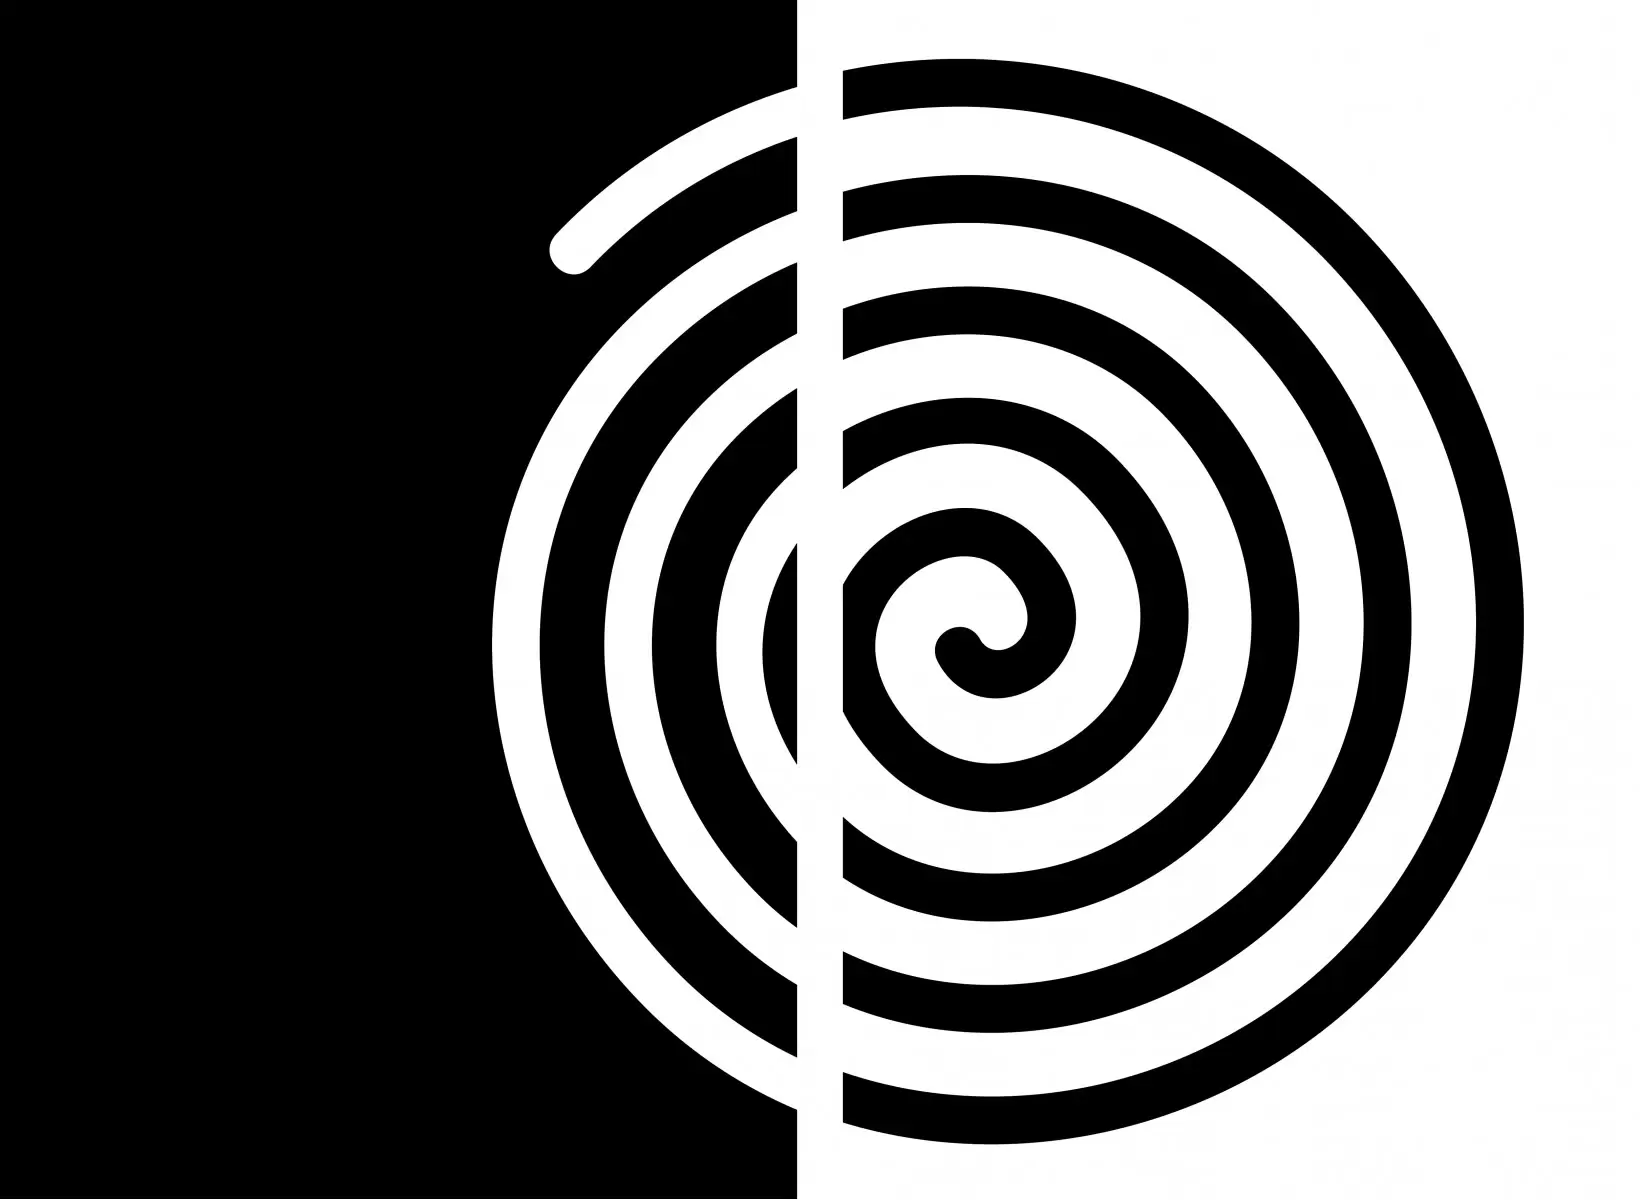 שבלול שחור לבן - אתי דגוביץ' - תמונות בסגנון גיאומטרי אבסטרקט מודרני  - מק''ט: 99088